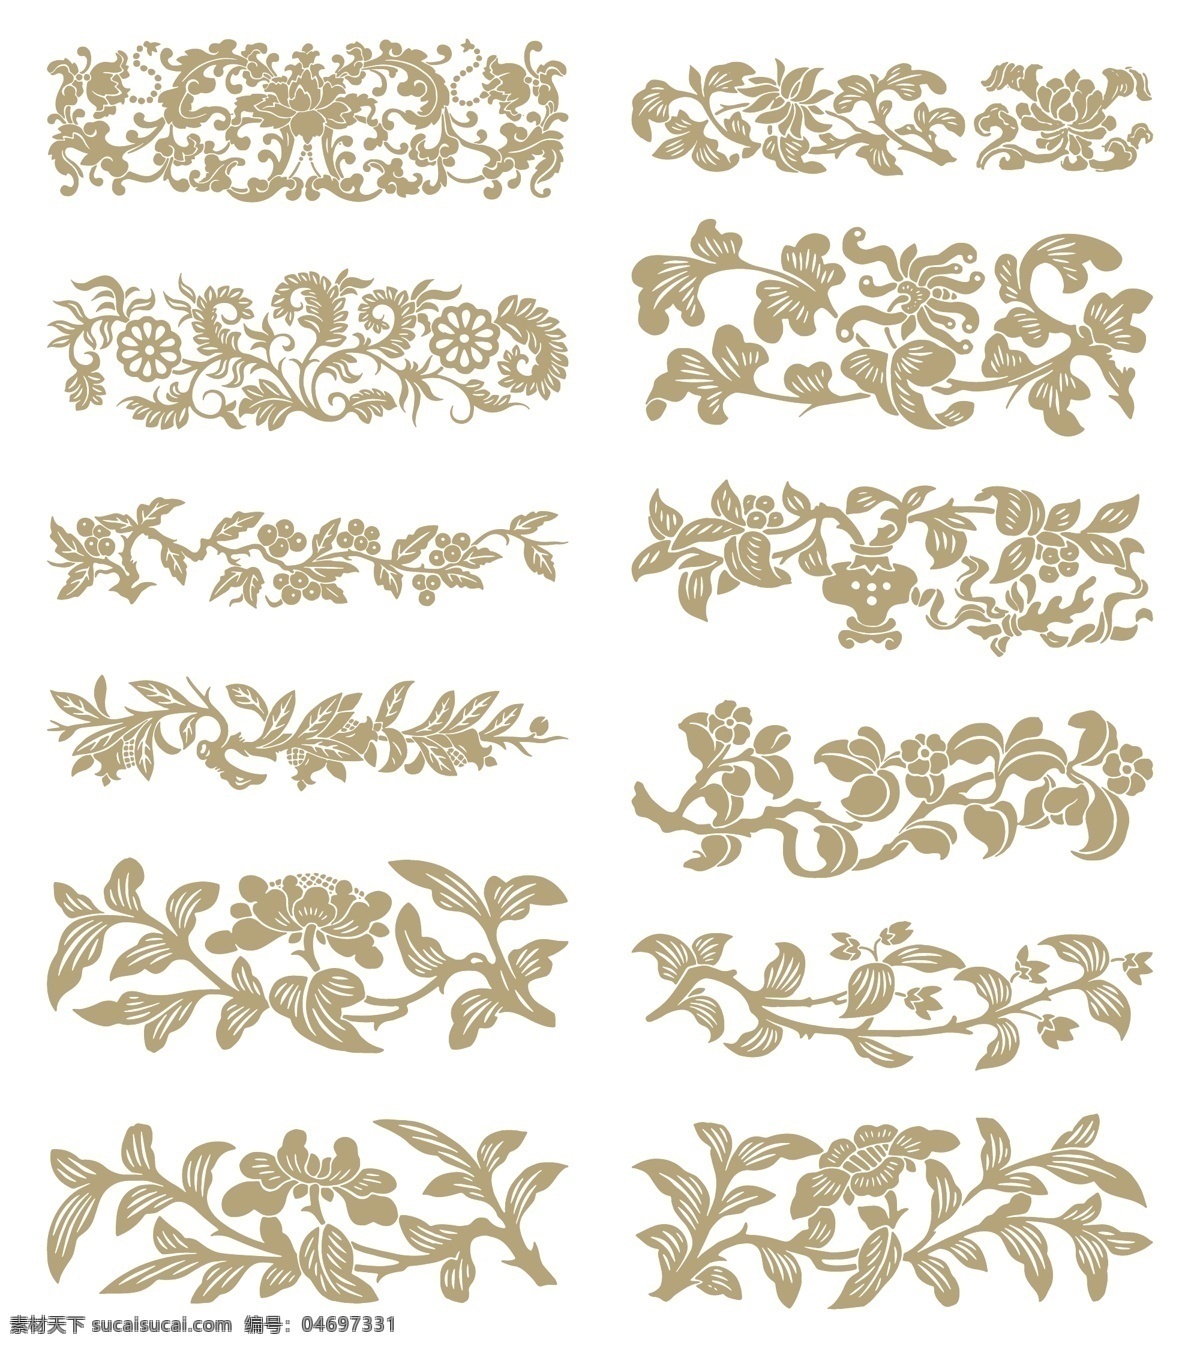 中国 风 吉祥 花草 植物 纹样 花草图案 传统图案 传统手绘 矢量图案 矢量植物 叶树图案 花图案 植物纹样 矢量图素材